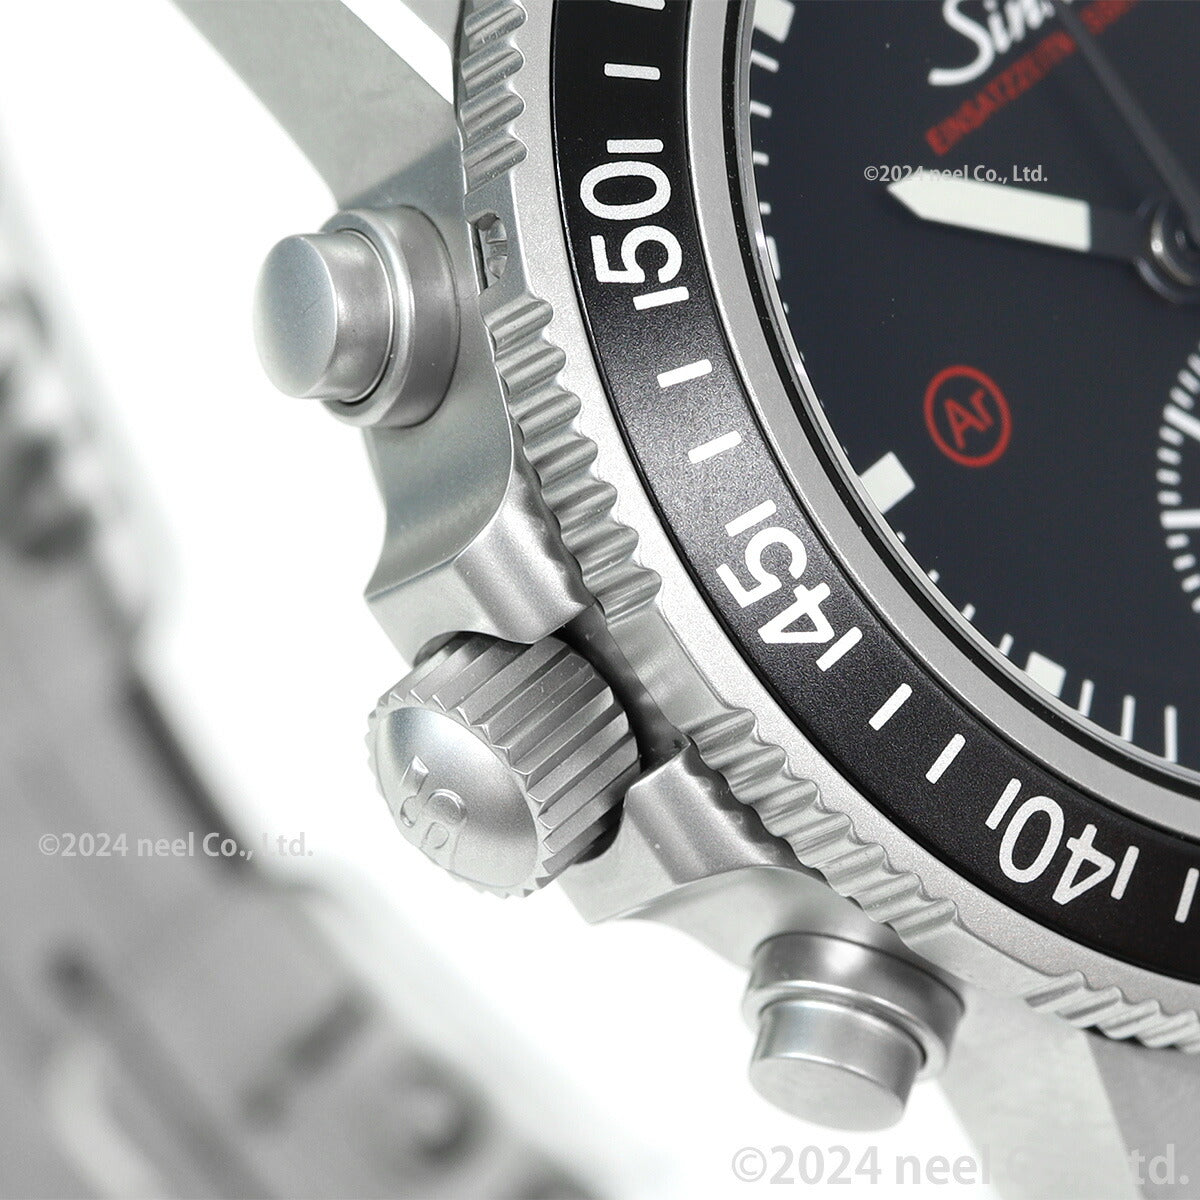 【60回分割手数料無料！】Sinn ジン EZM13.1 自動巻き 腕時計 メンズ Diving Watches ダイバーズウォッチ ステンレスバンド ドイツ製